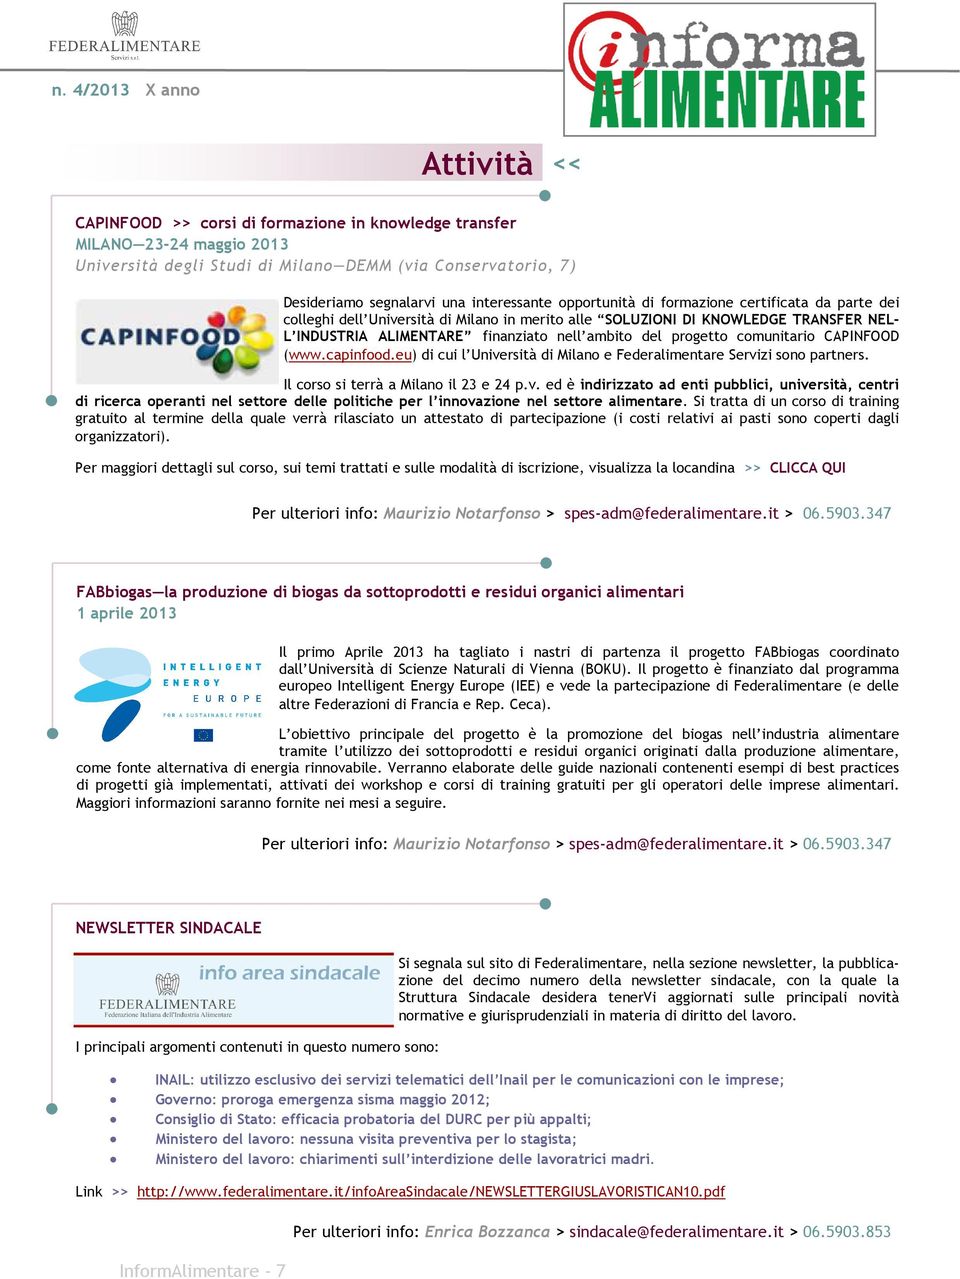 comunitario CAPINFOOD (www.capinfood.eu) di cui l Università di Milano e Federalimentare Servizi sono partners. Il corso si terrà a Milano il 23 e 24 p.v. ed è indirizzato ad enti pubblici, università, centri di ricerca operanti nel settore delle politiche per l innovazione nel settore alimentare.